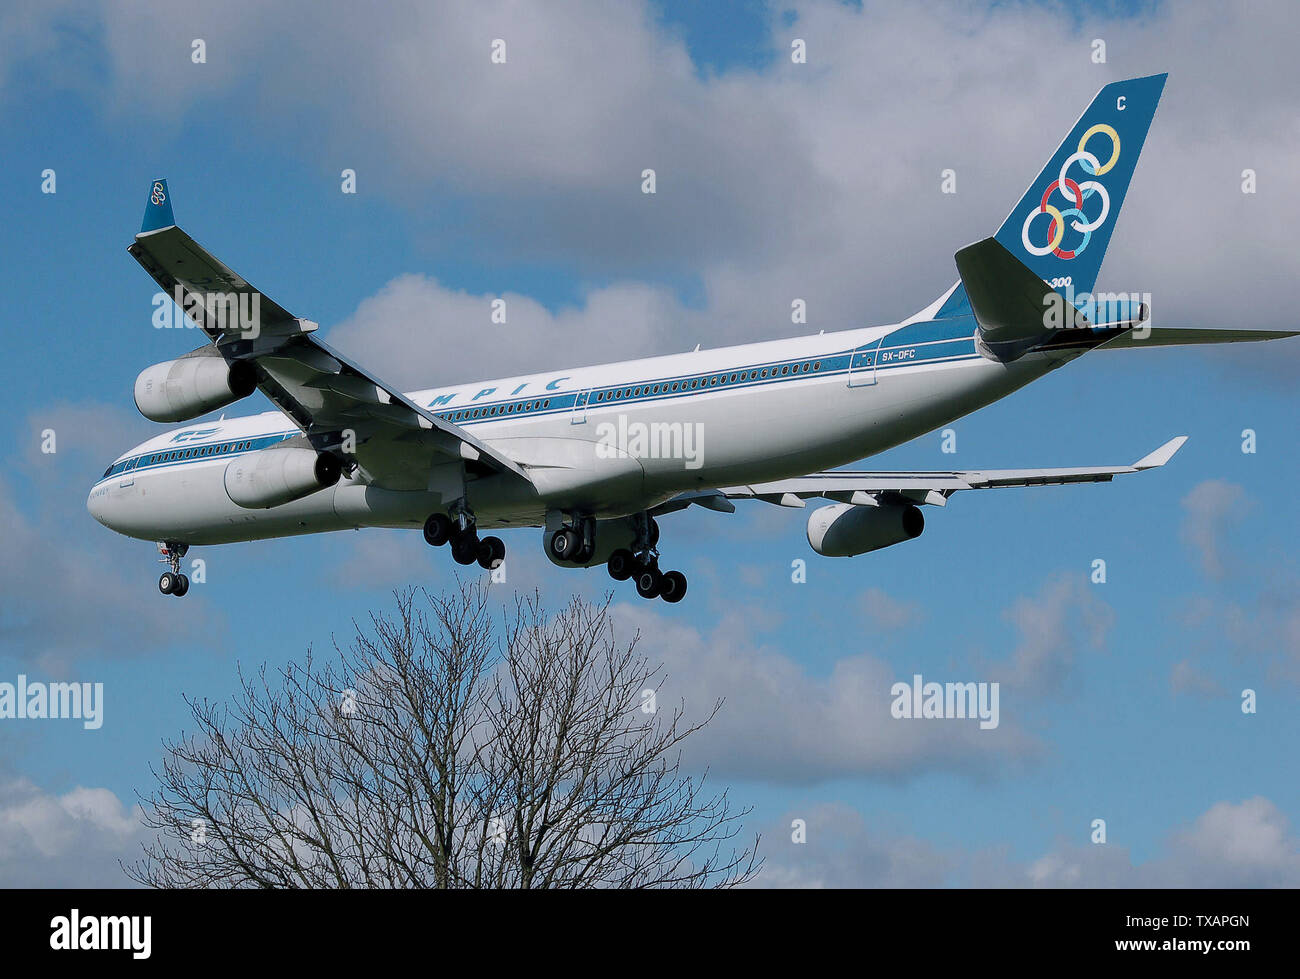 Olympic airlines Stockfotos und -bilder Kaufen - Alamy